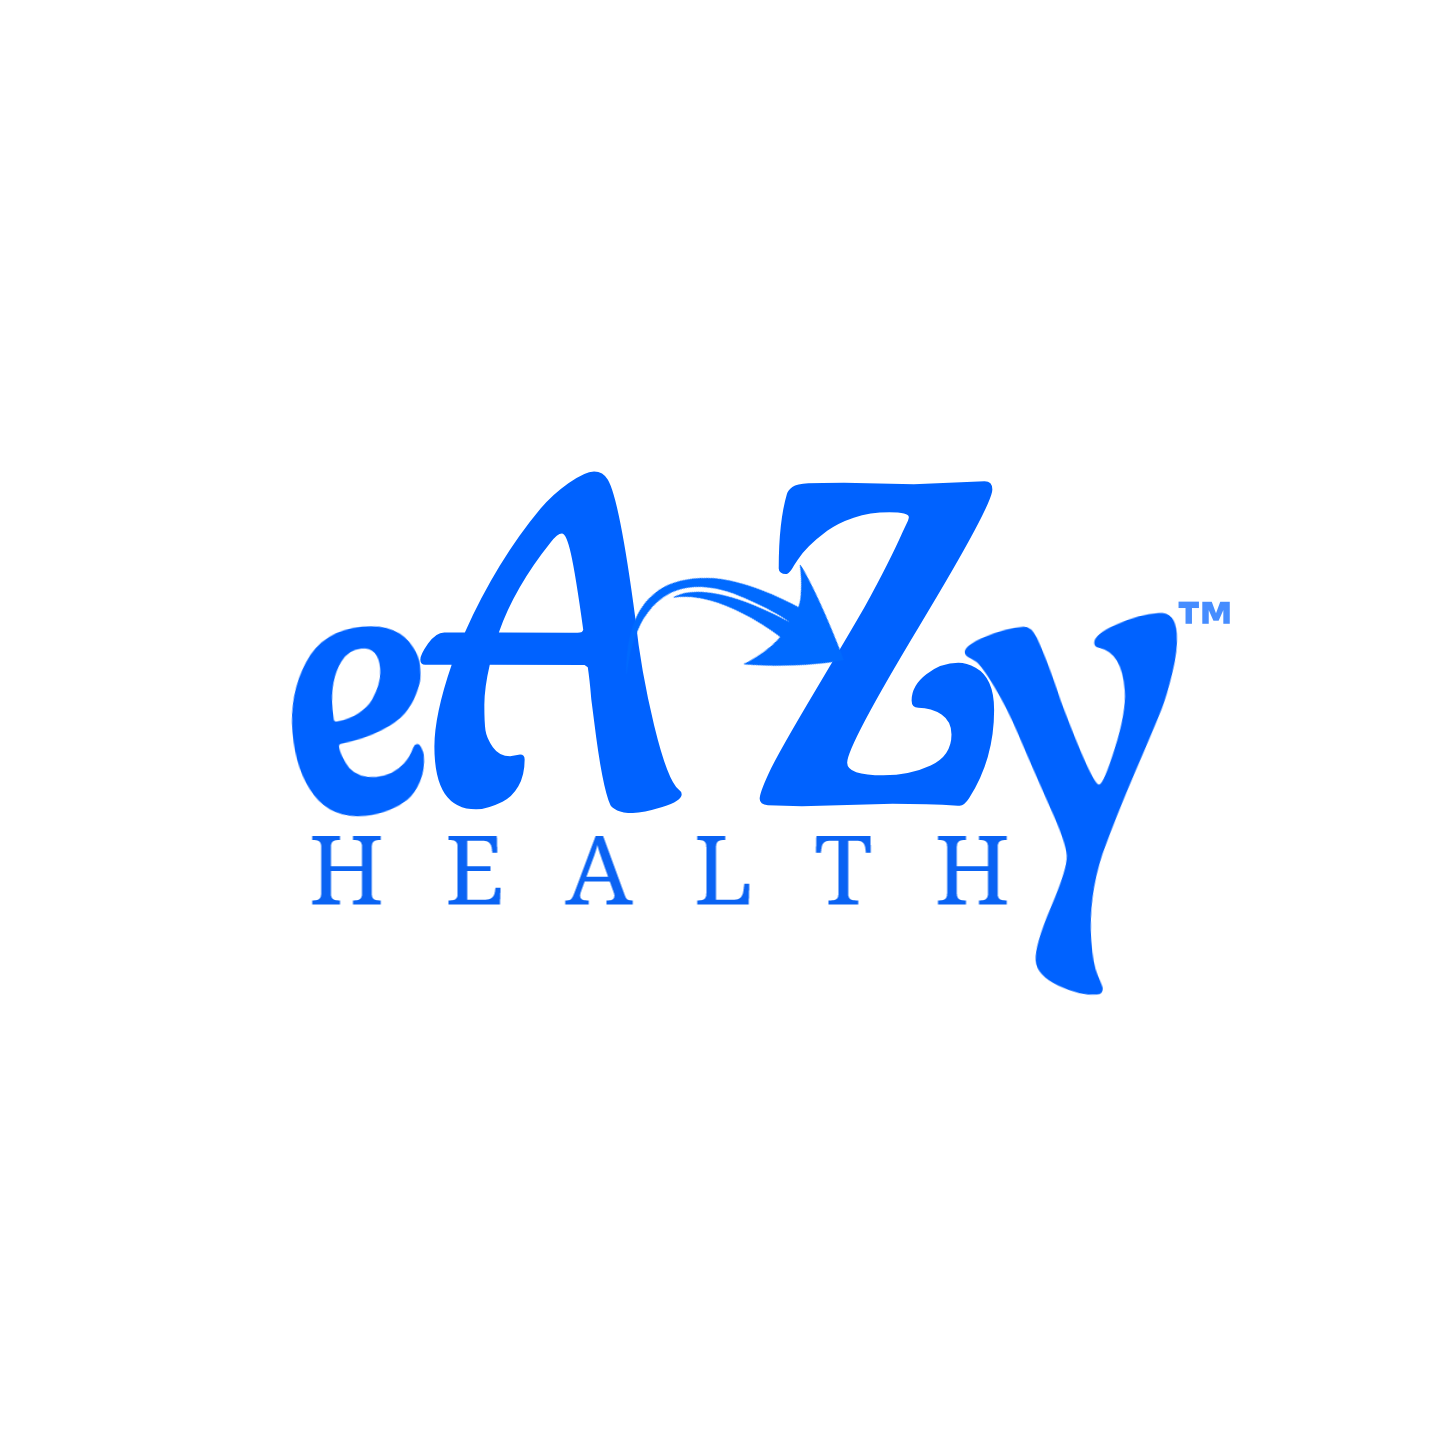 Eazy Health Group